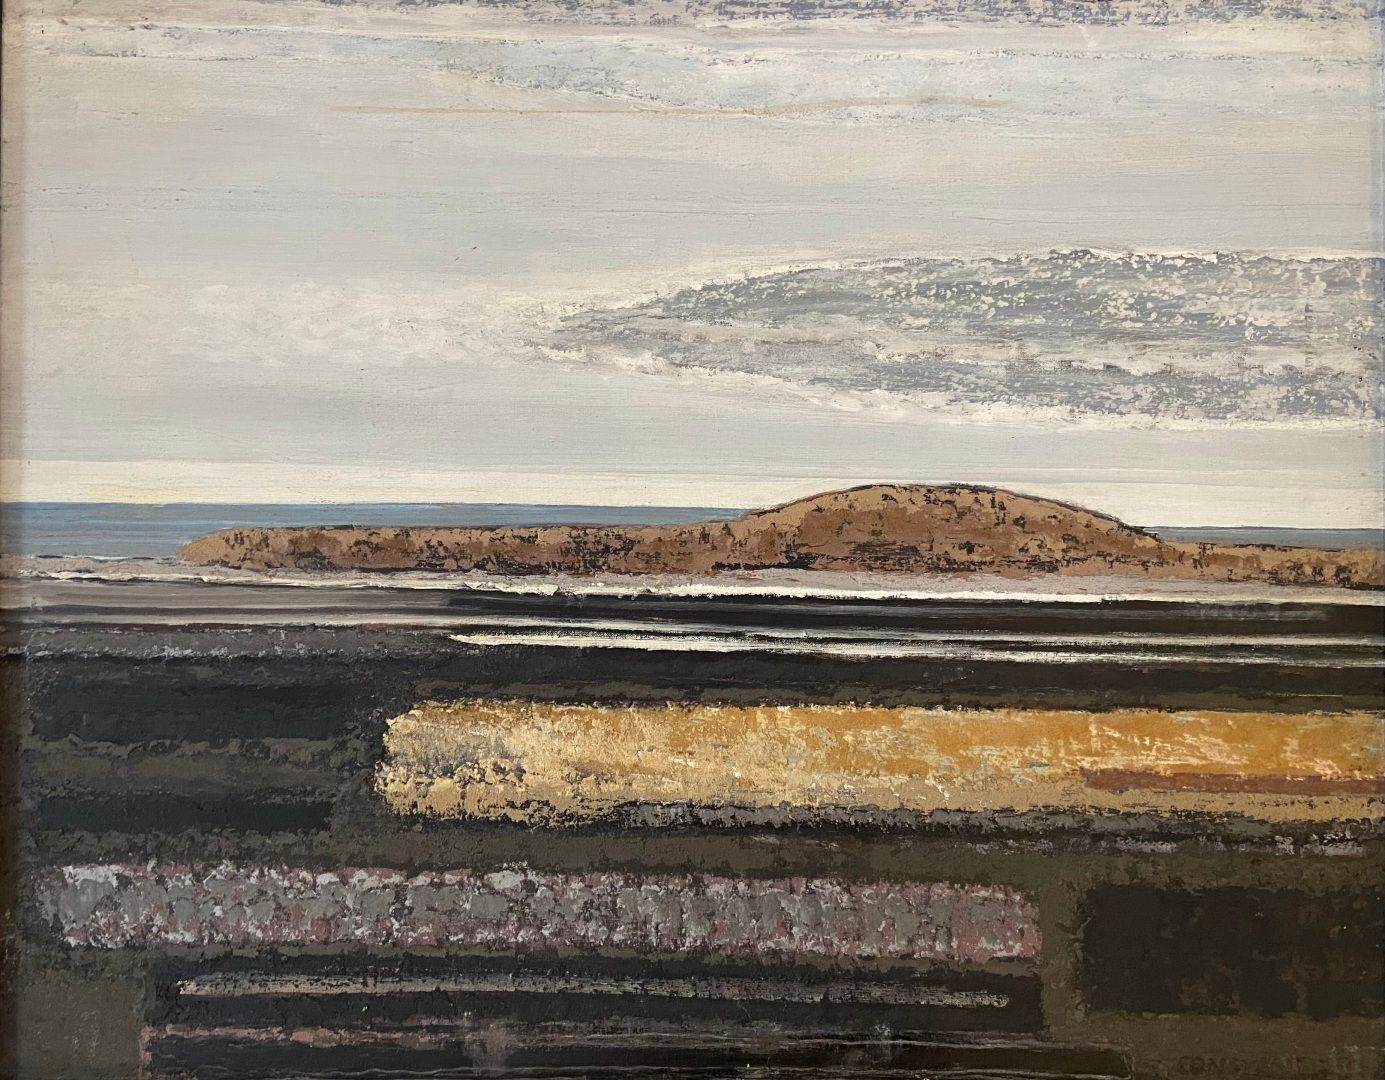 Null 克里斯蒂安-康斯坦特(1926-2015)
海洋 - 1975
布面混合媒体
右下方有签名和日期75
65.5 x 83 cm